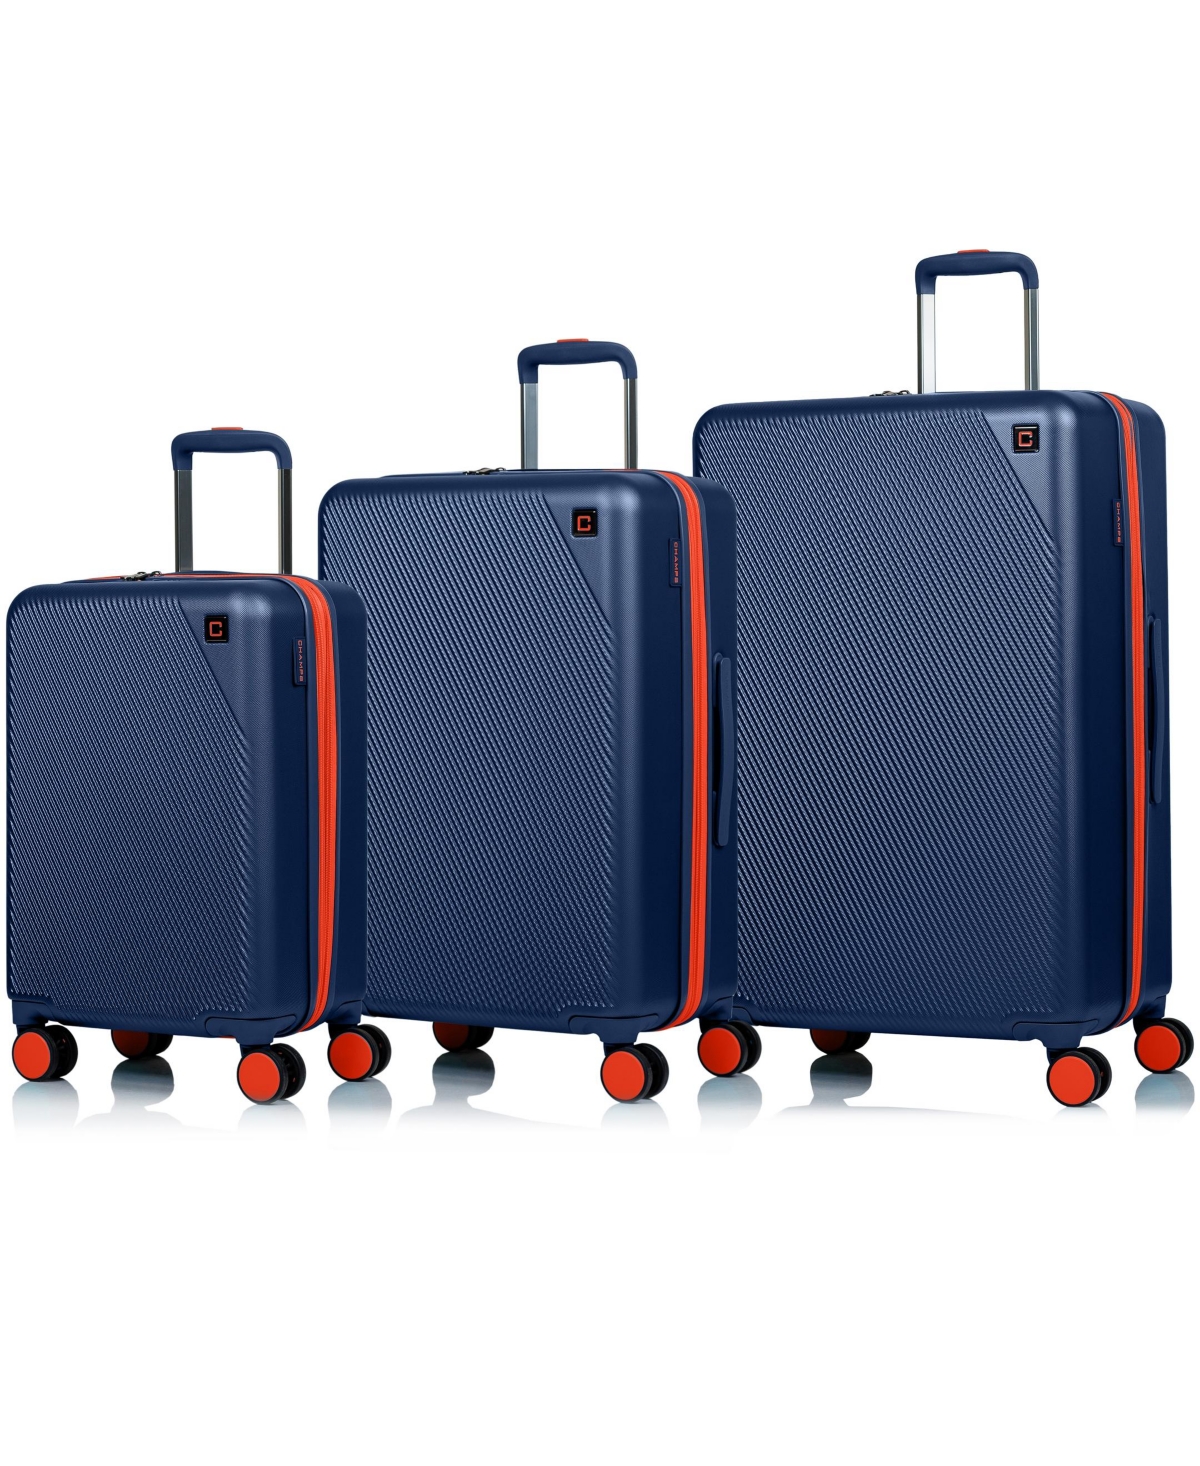 3-Piece Fresh Hardside Luggage Set - Gray